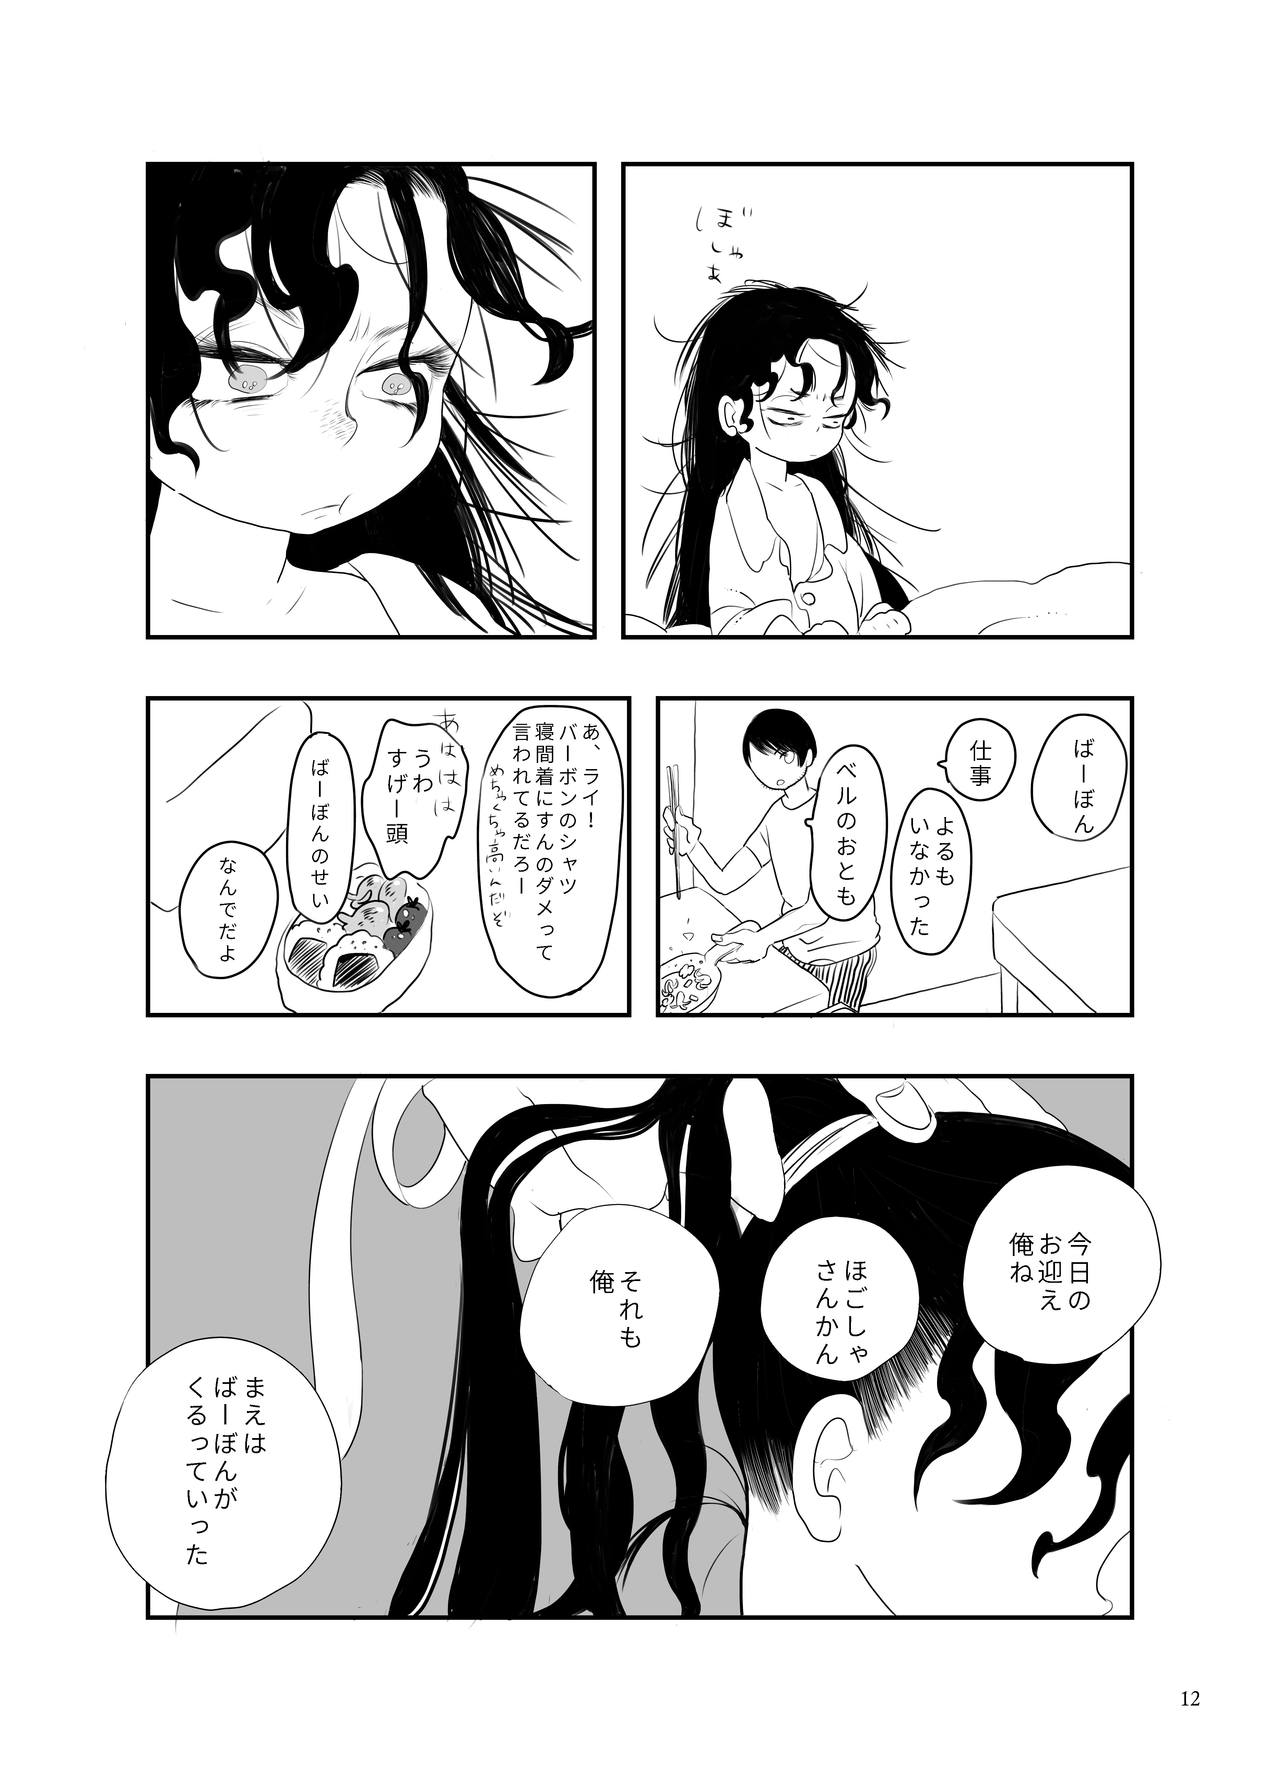 [Yaken] Wonder Murder Kindergaten (Detective Conan) [Digital] 10